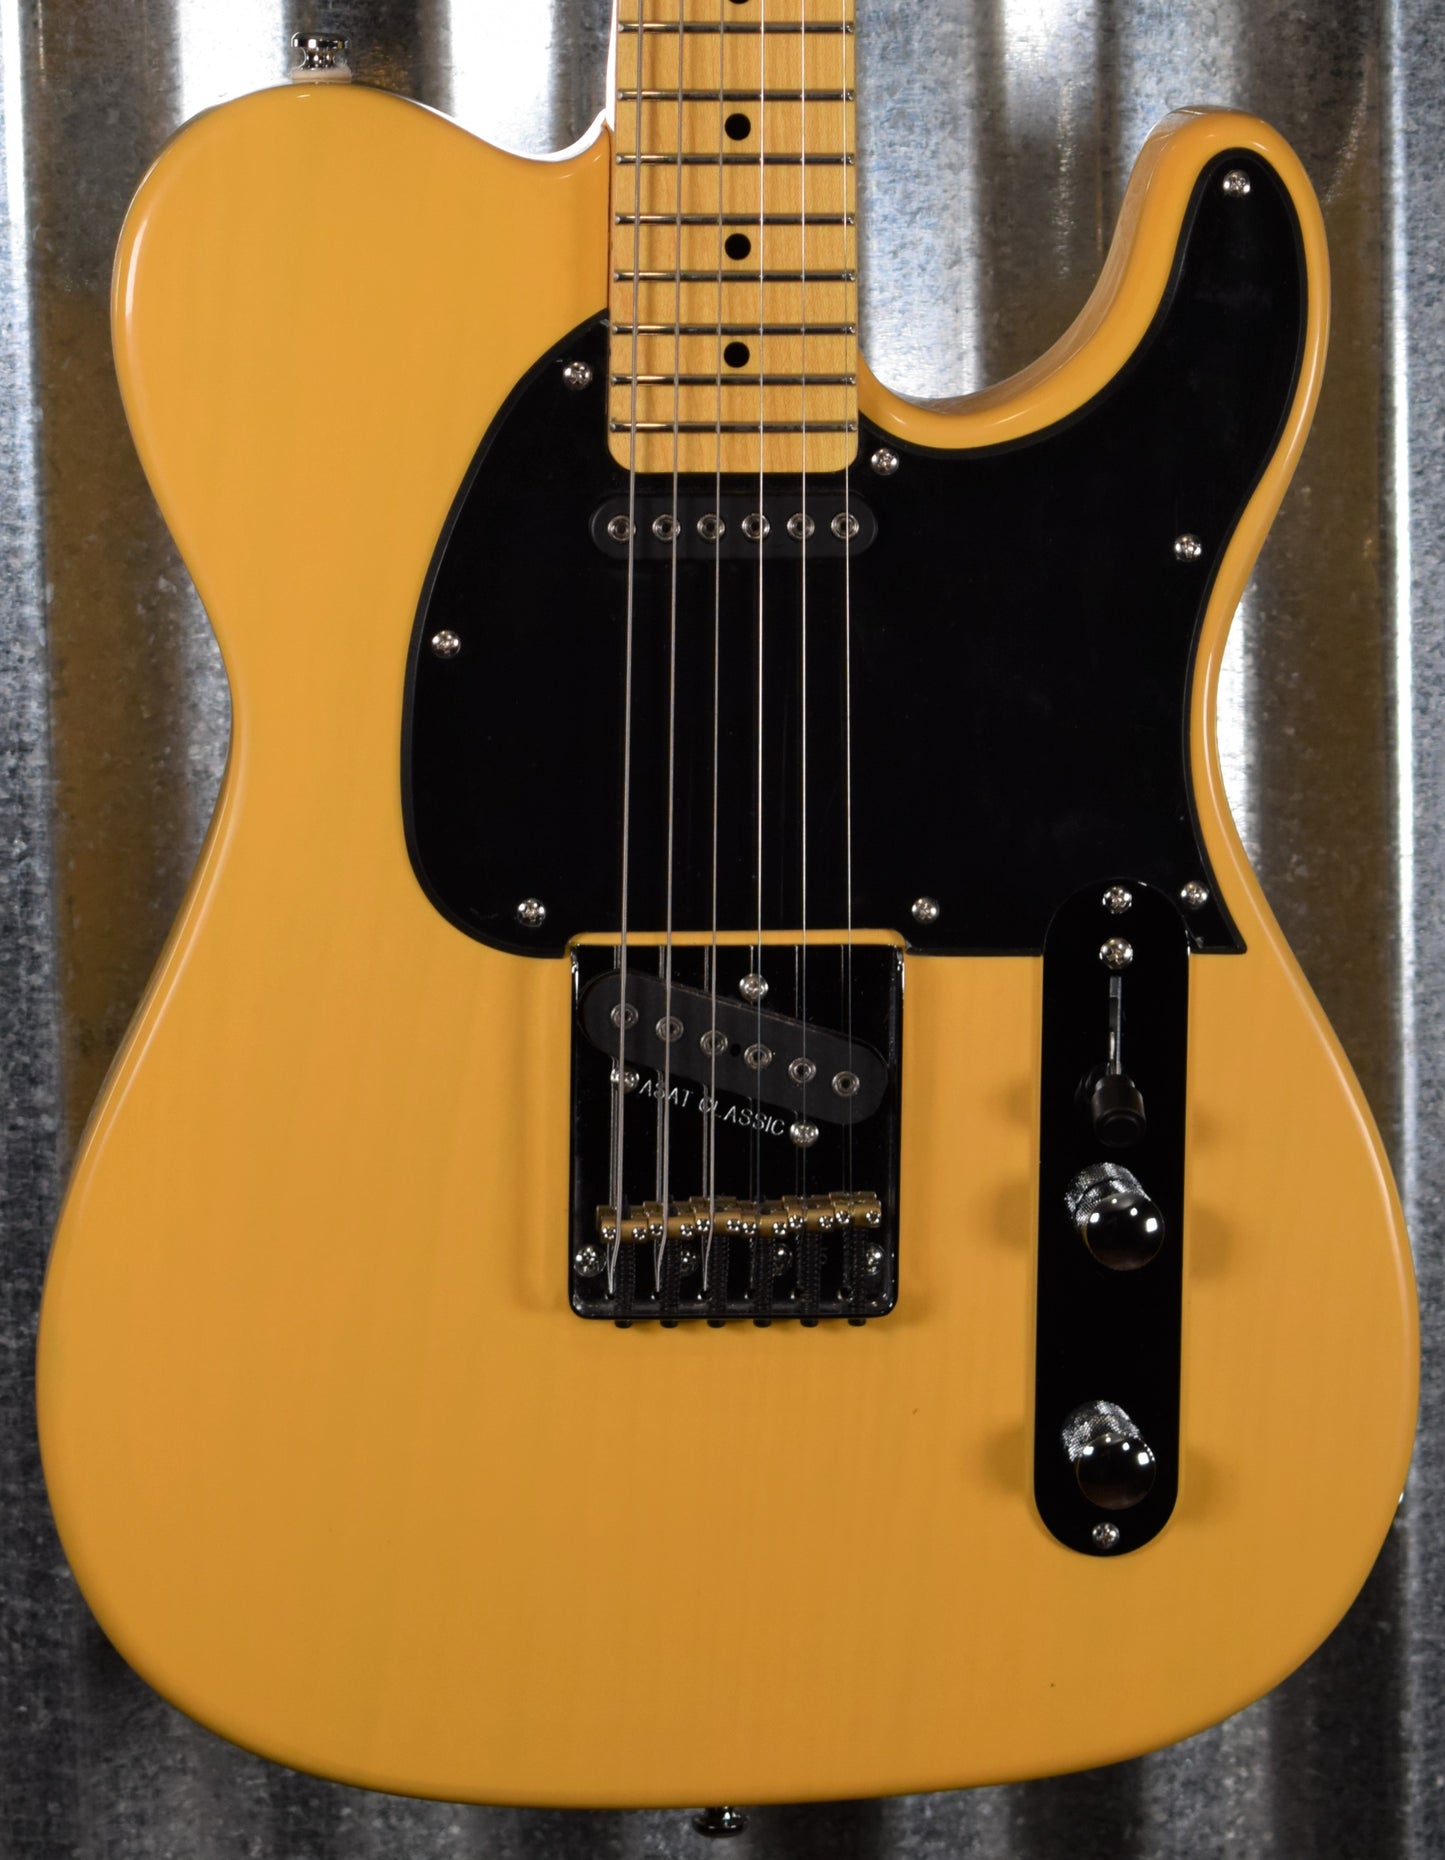 G&L Tribute ASAT Classic Butterscotch Blonde Guitar #1719 Demo